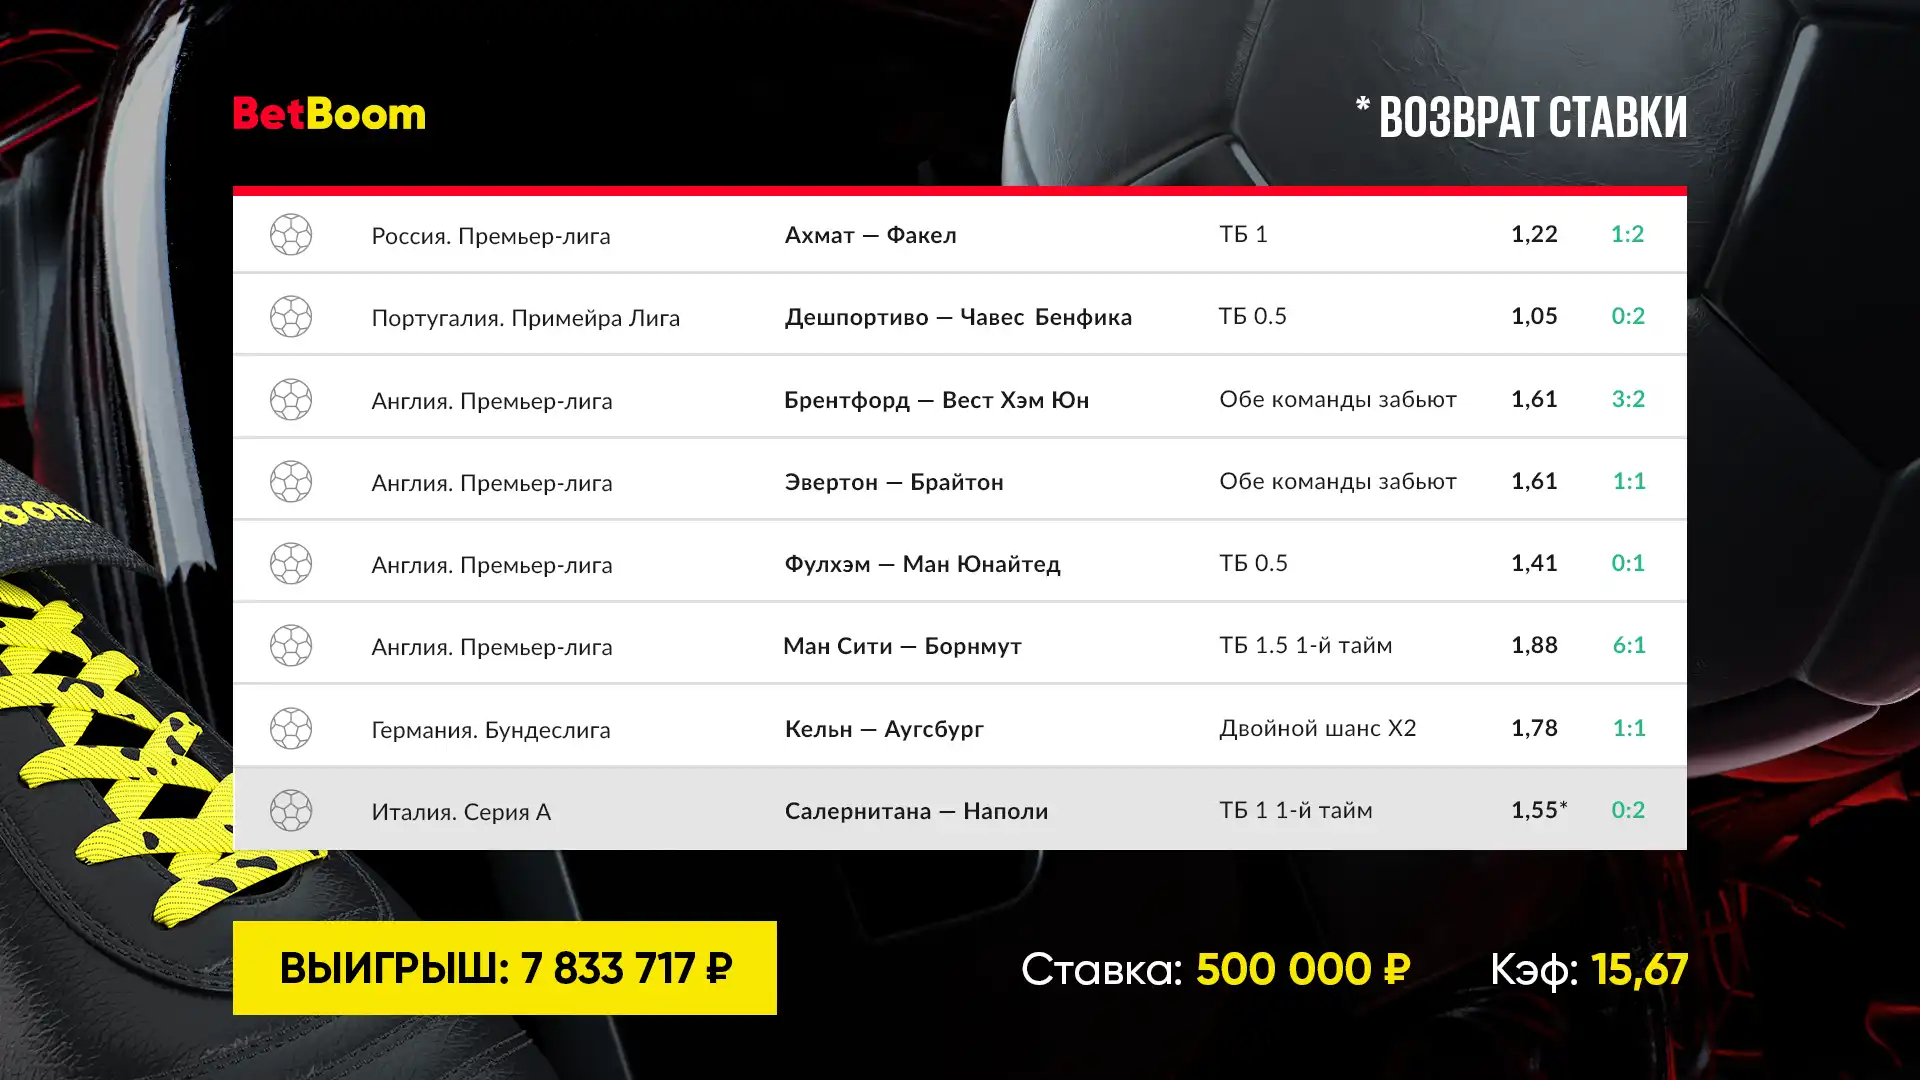 Автогол и забитые мячи на последних минутах: два футбольных экспресса принесли клиенту BetBoom свыше 13 000 000 рублей выигрыша